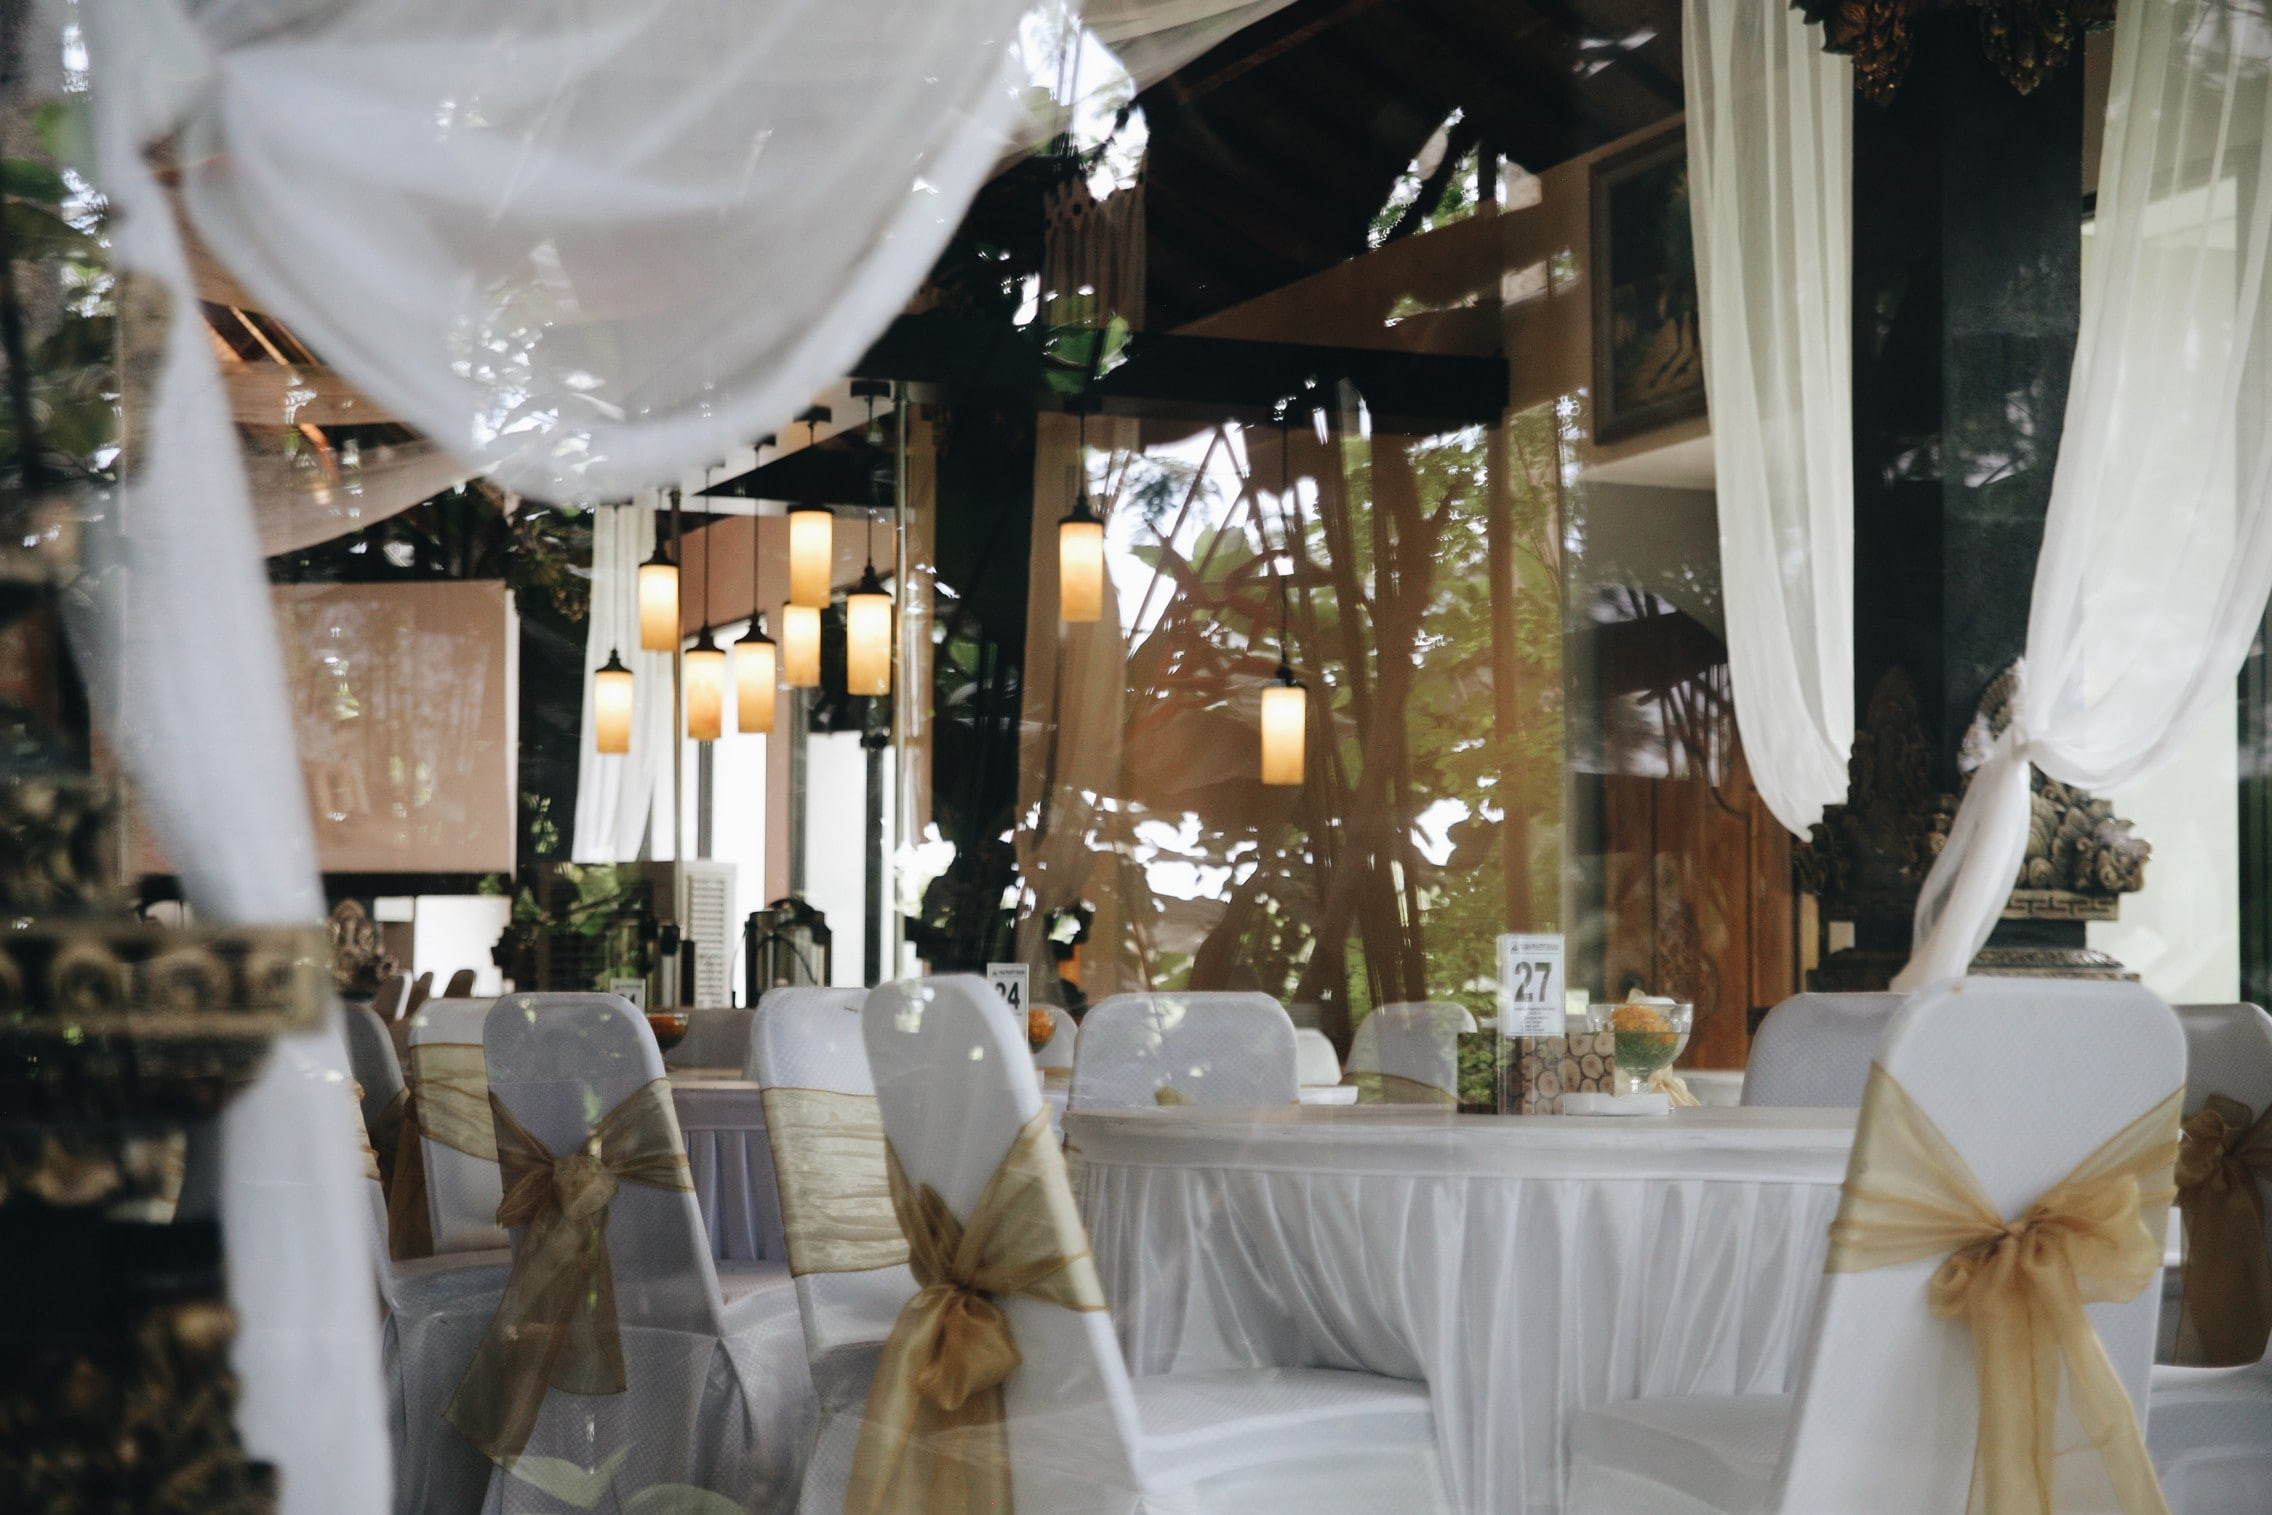 Ingin Sewa Gedung Pernikahan di Bali? Perhatikan Hal berikut ini!